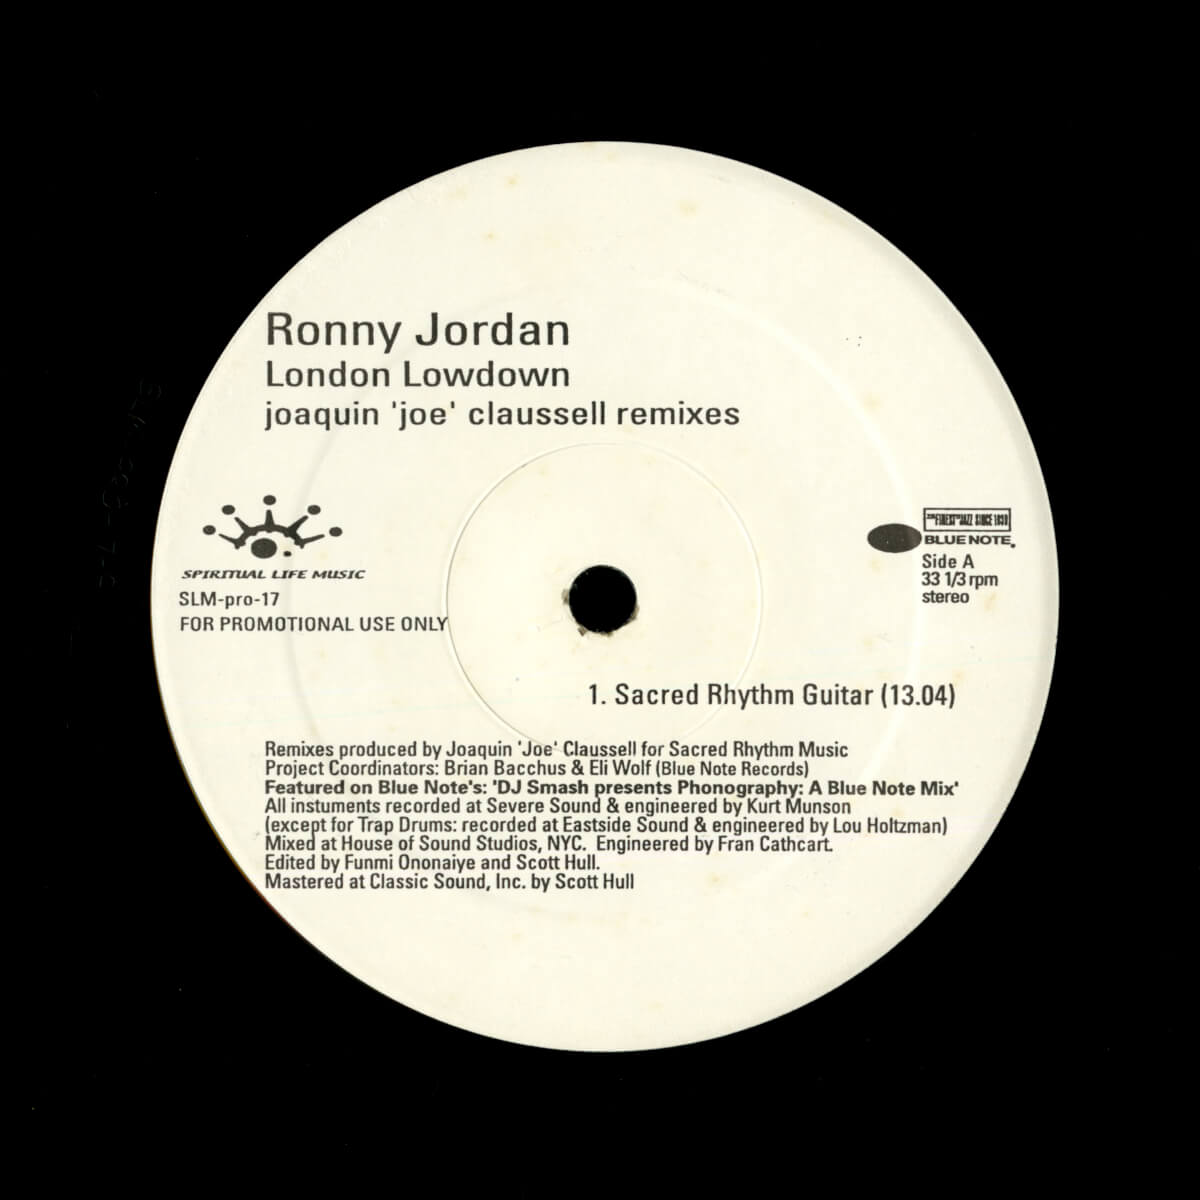 Ronny Jordan – London Lowdown (Joaquin 'Joe' Claussell Remixes)